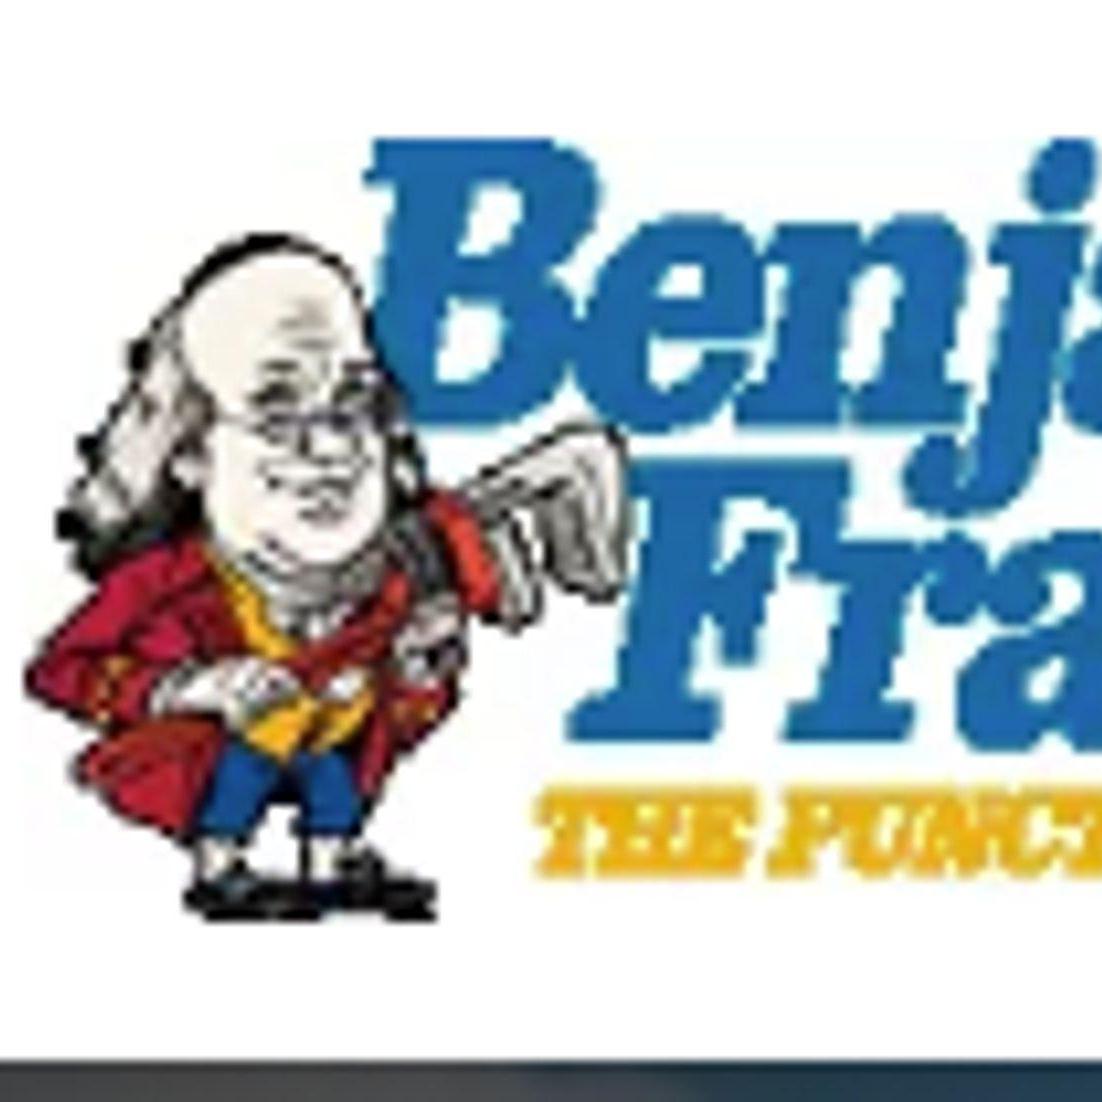 Benjamin  Franklin Plumbing